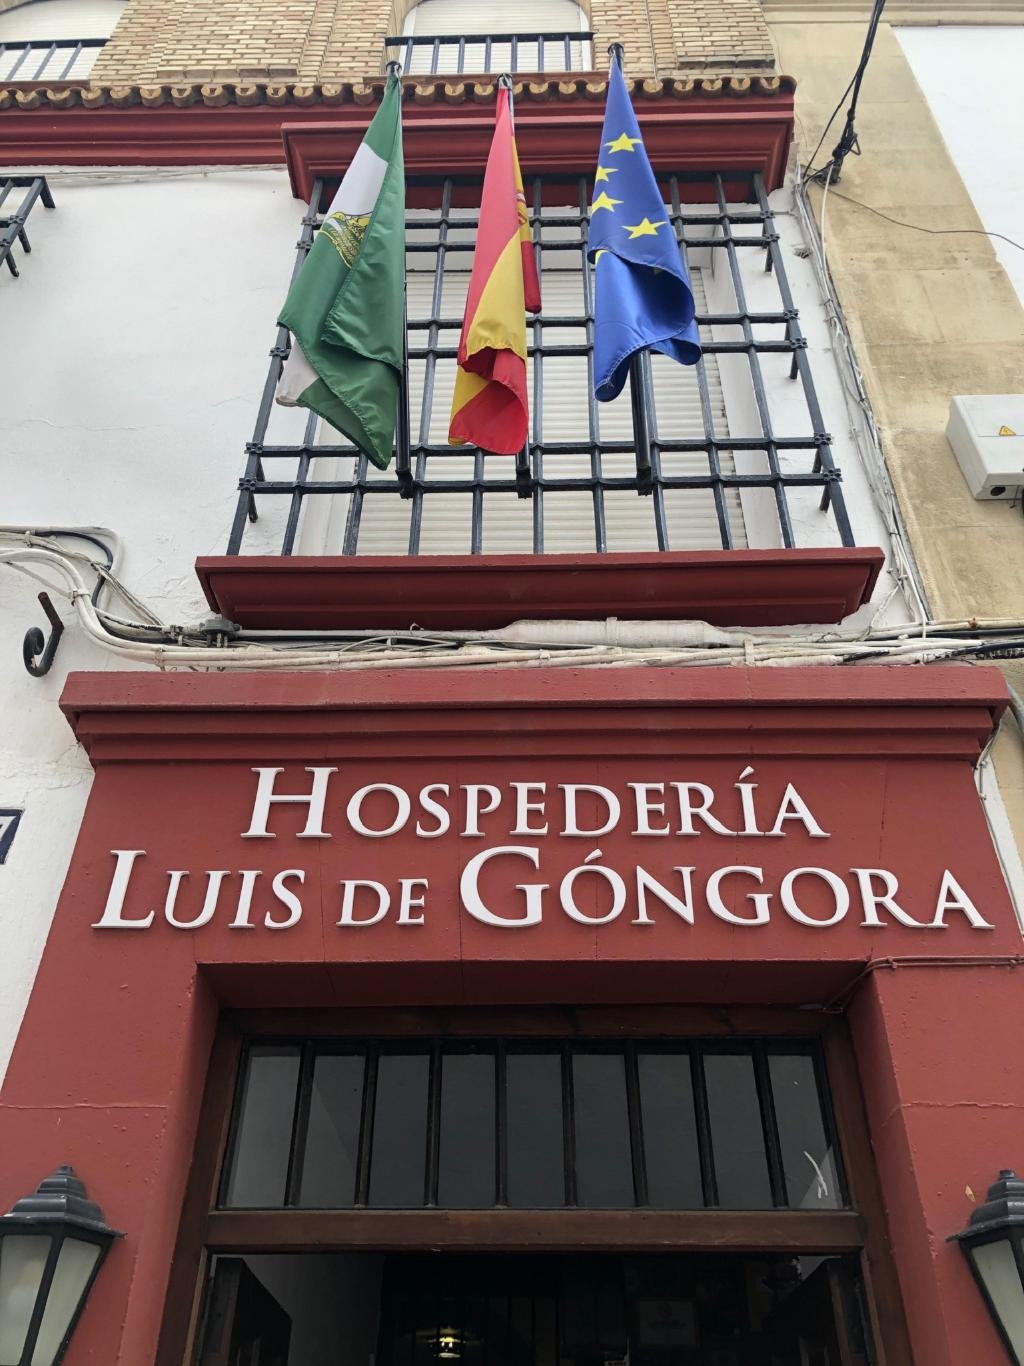 Hospederia Luis de Gongora